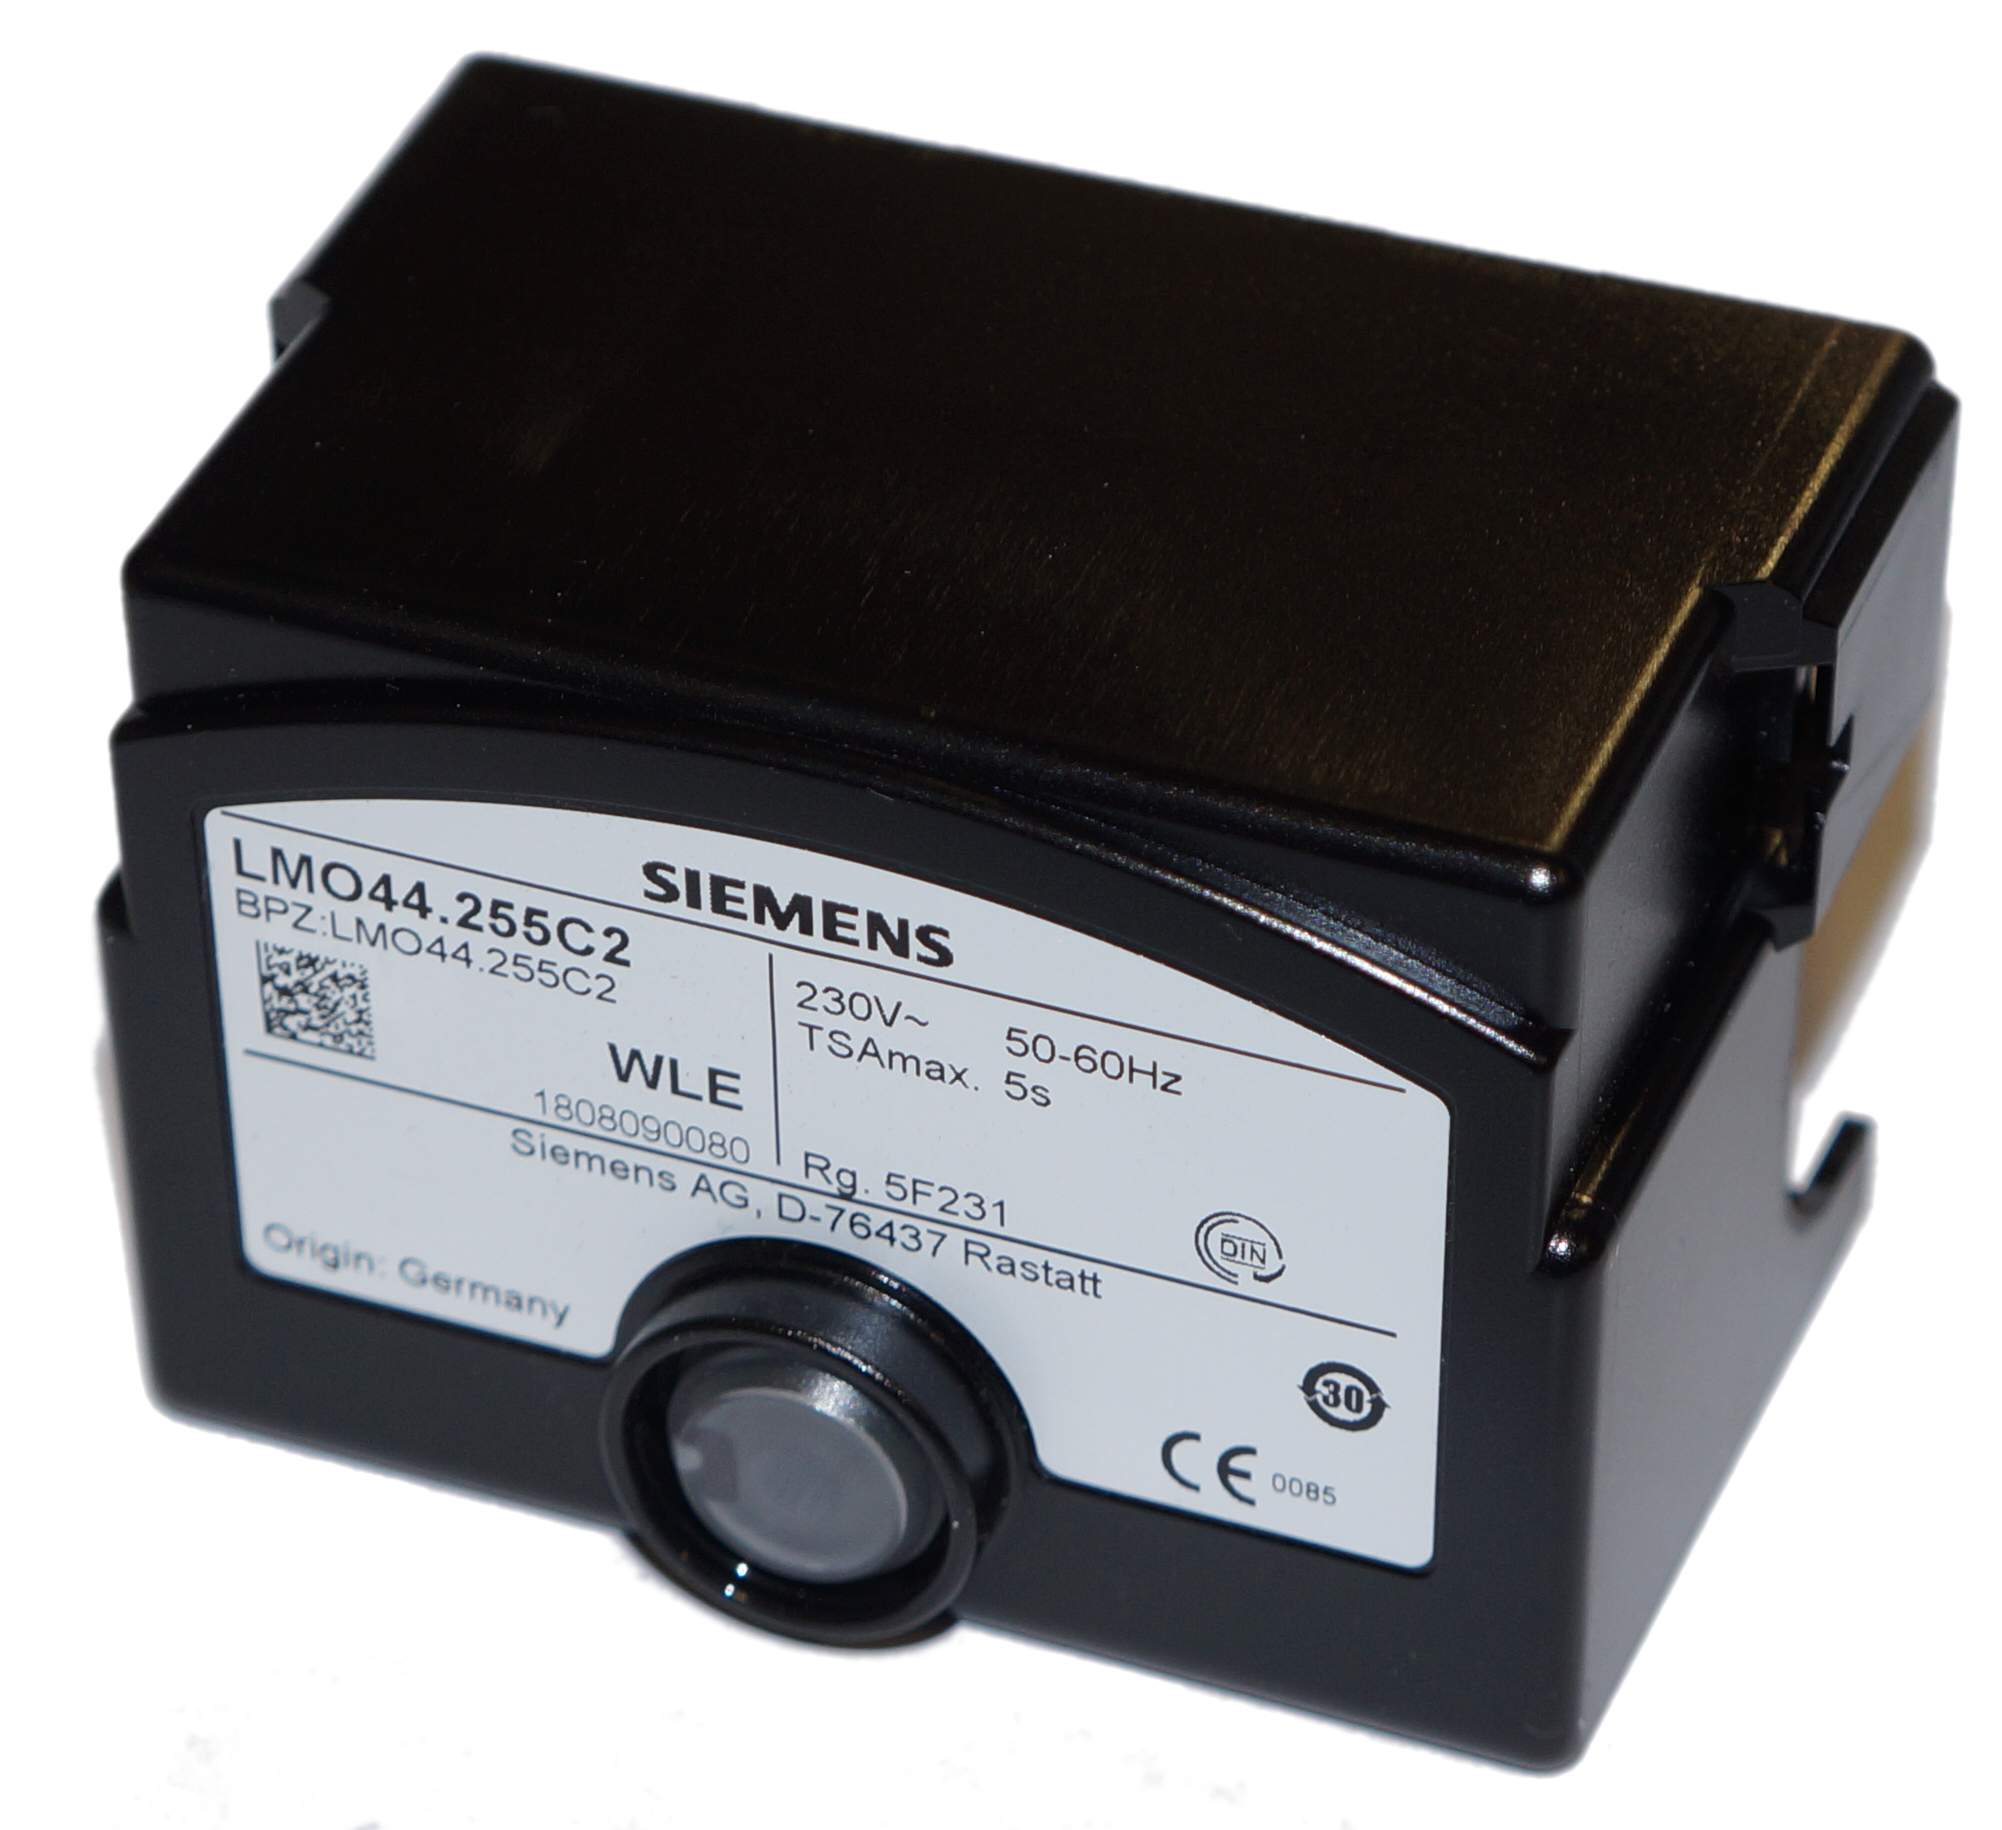 Relais Siemens LMO44.255 C2